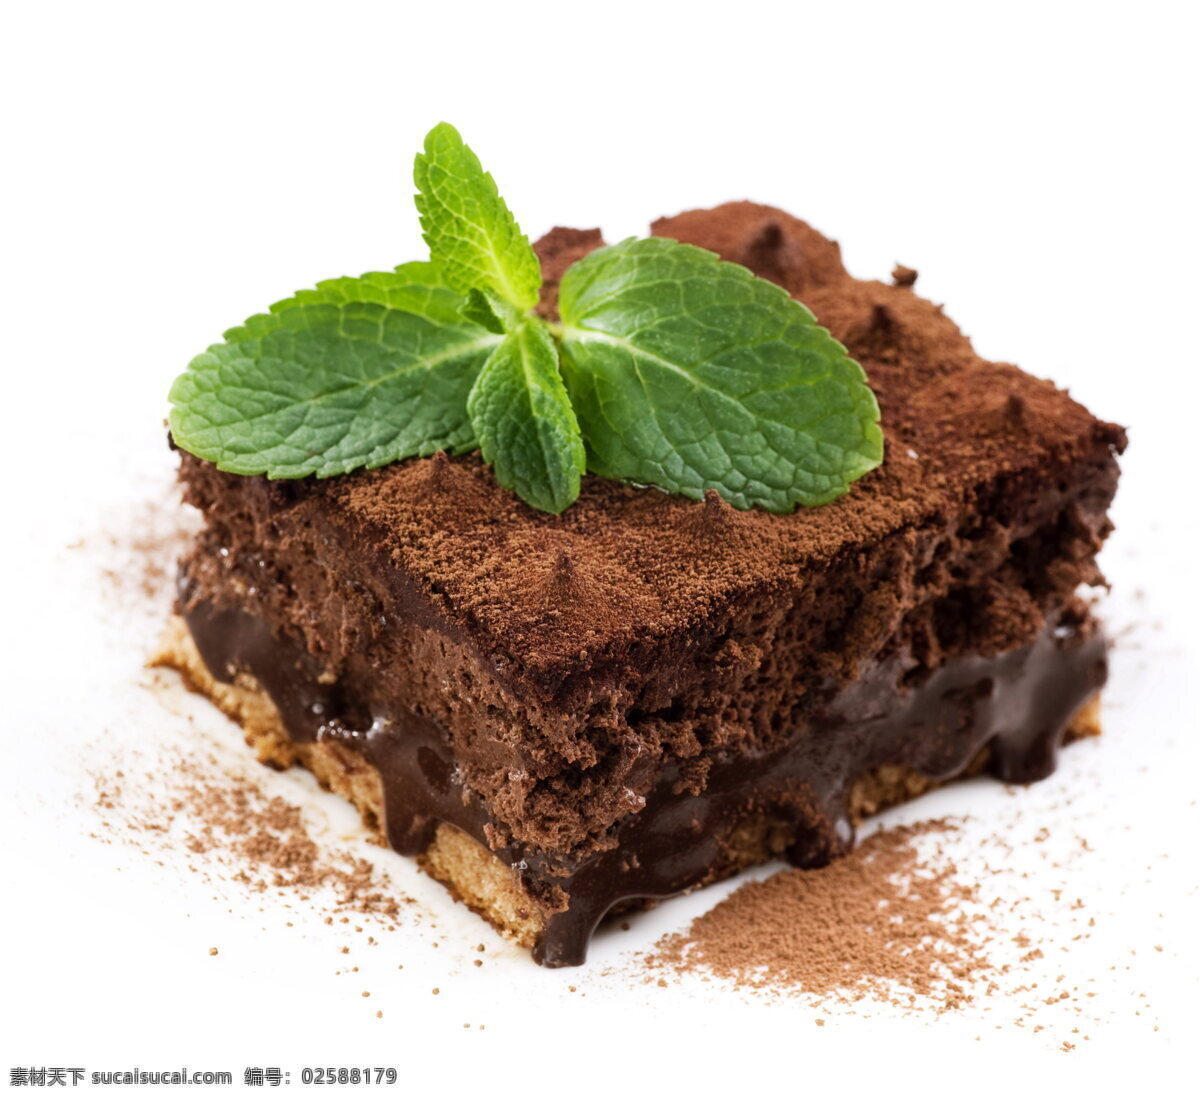 薄荷 巧克力 蛋糕 甜点 糕点 点心 甜品 薄荷叶 绿叶 叶子 巧克力蛋糕 方块蛋糕 美味 美食 食物 冷食 餐饮美食 西餐美食